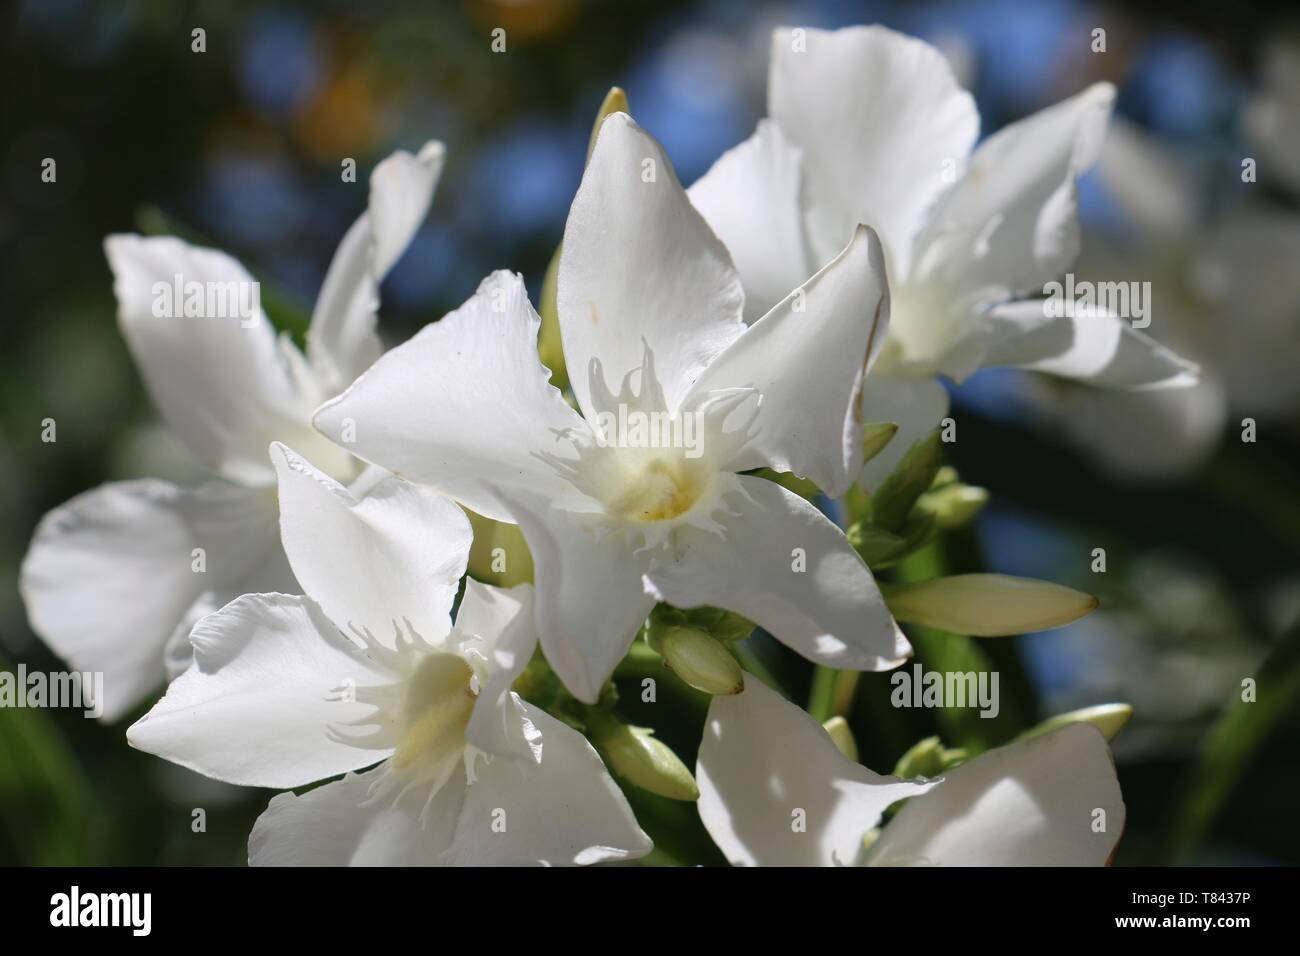 Sud de la France - fleurs blanches de Nerium oleander au soleil Photo Stock  - Alamy